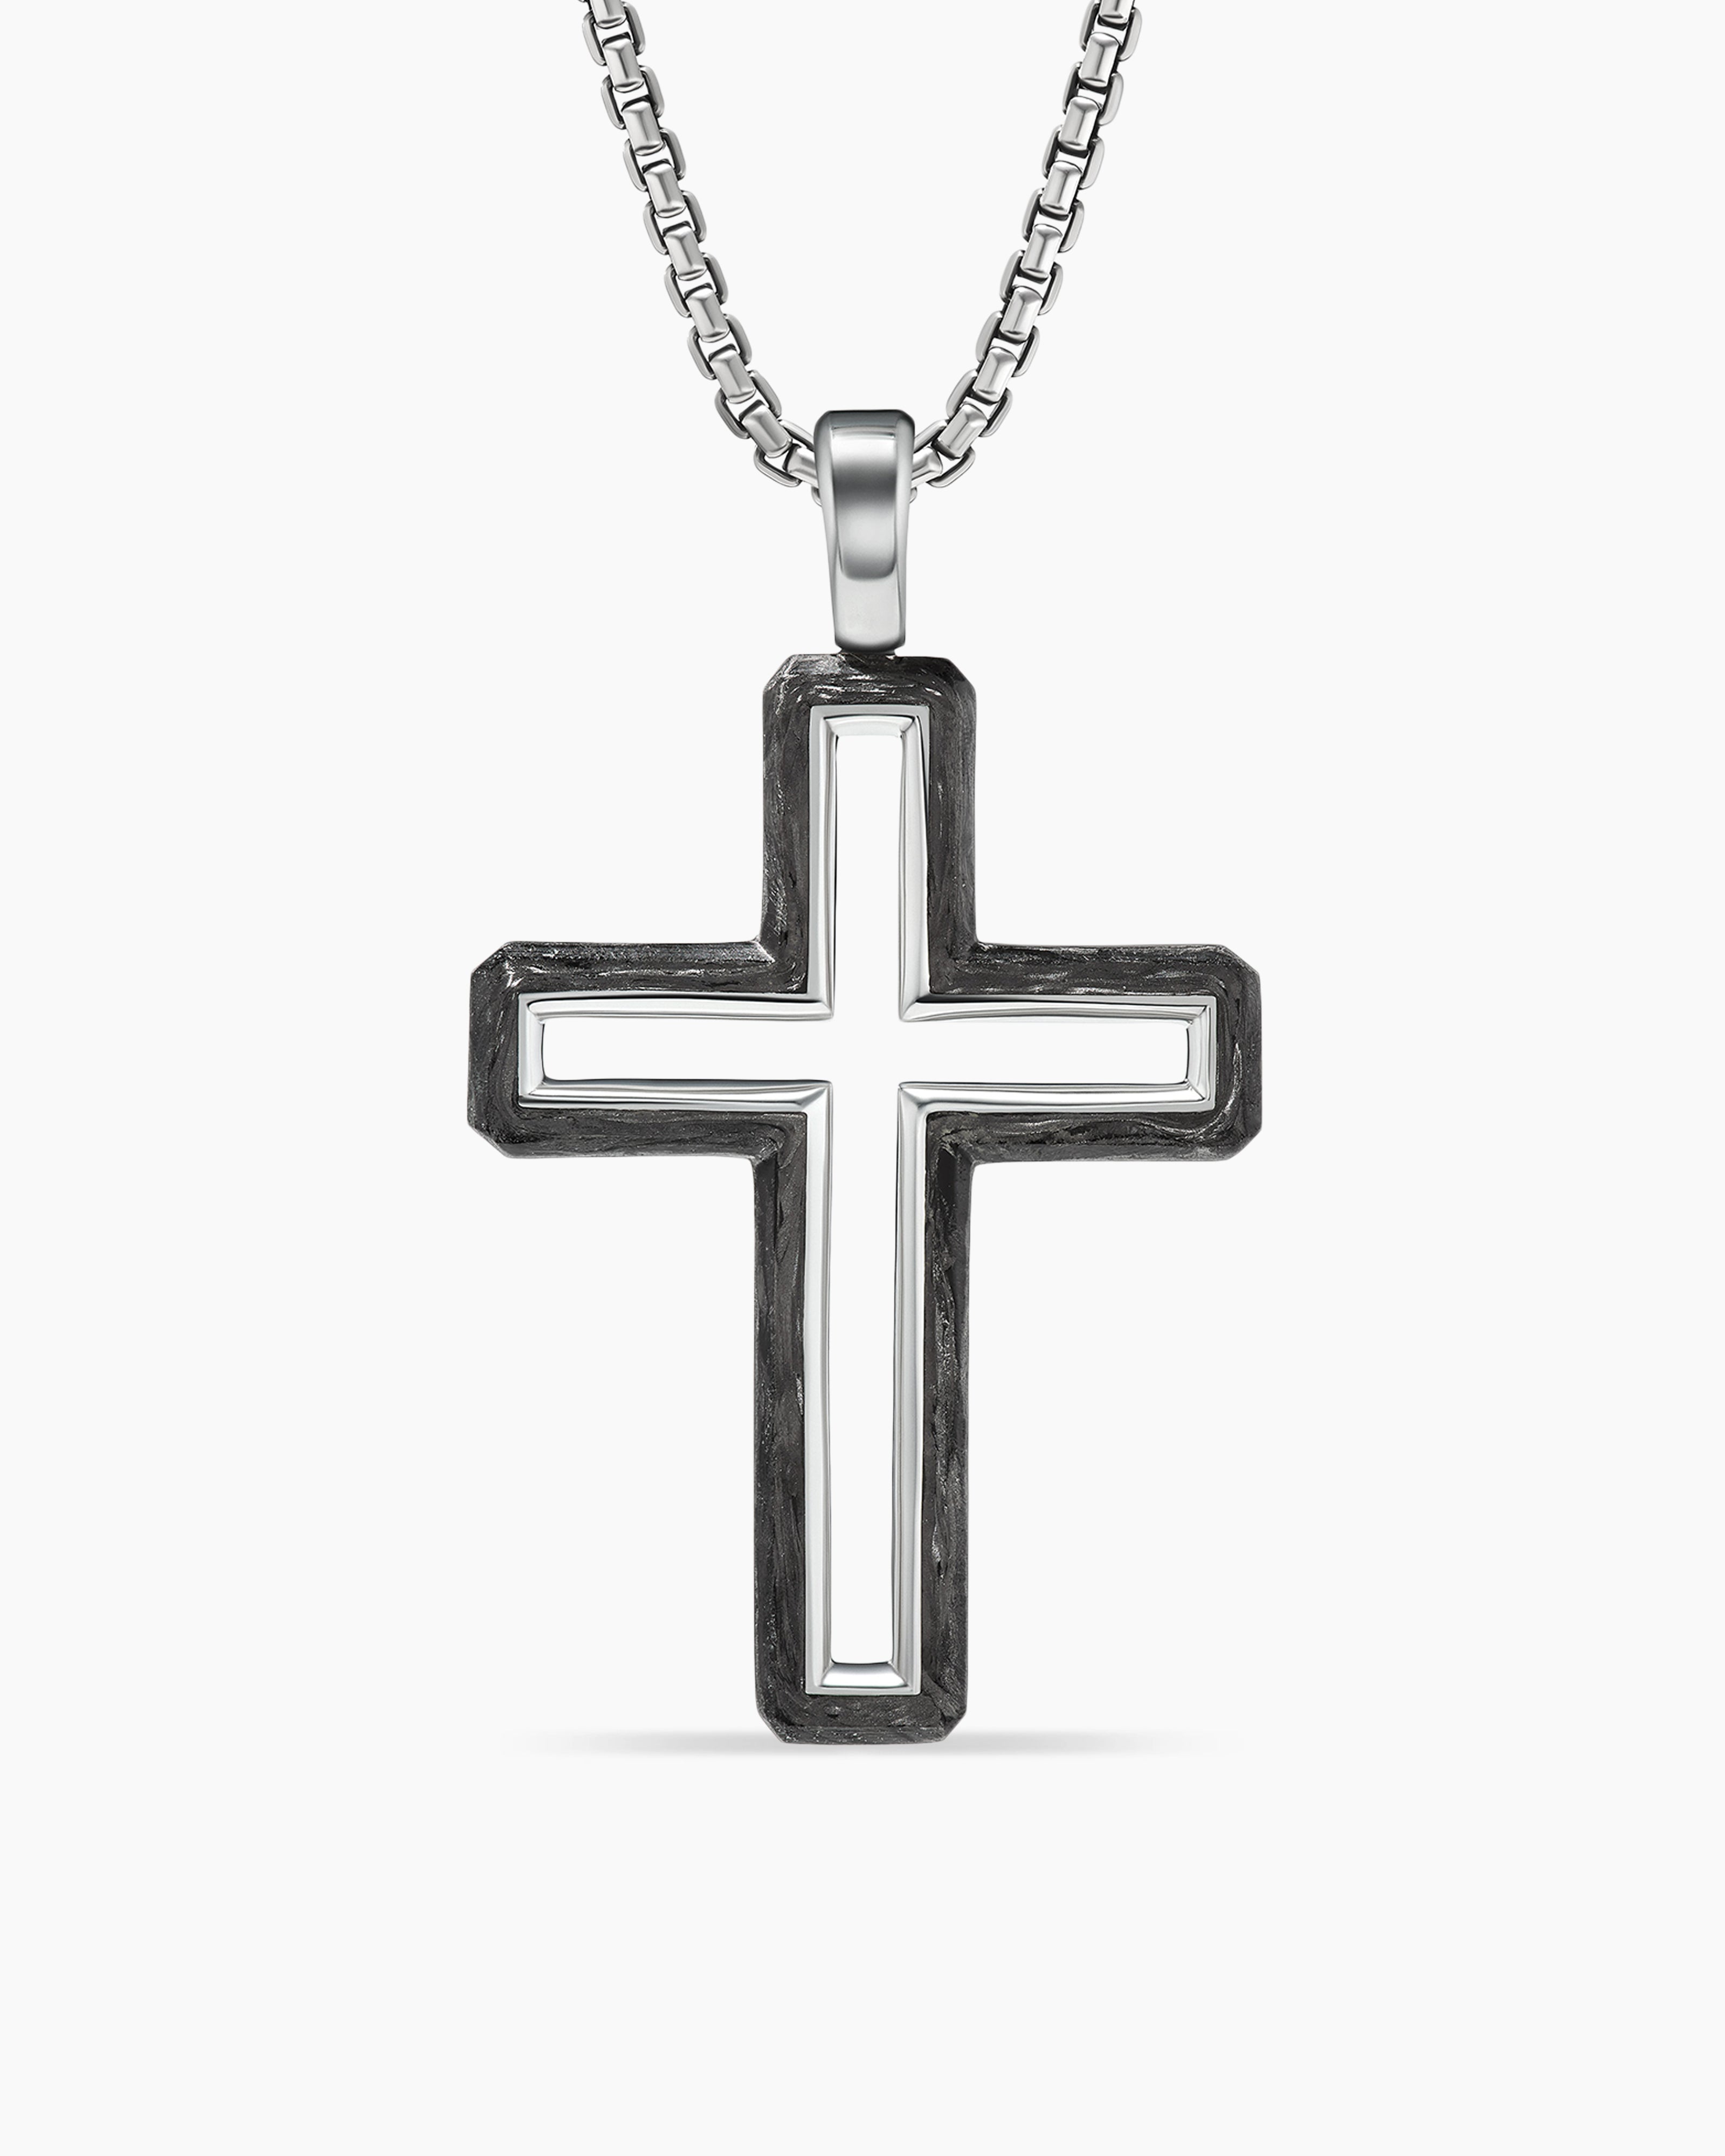 Men's Chain Pendants: Cross, Tags, & Modern Styles